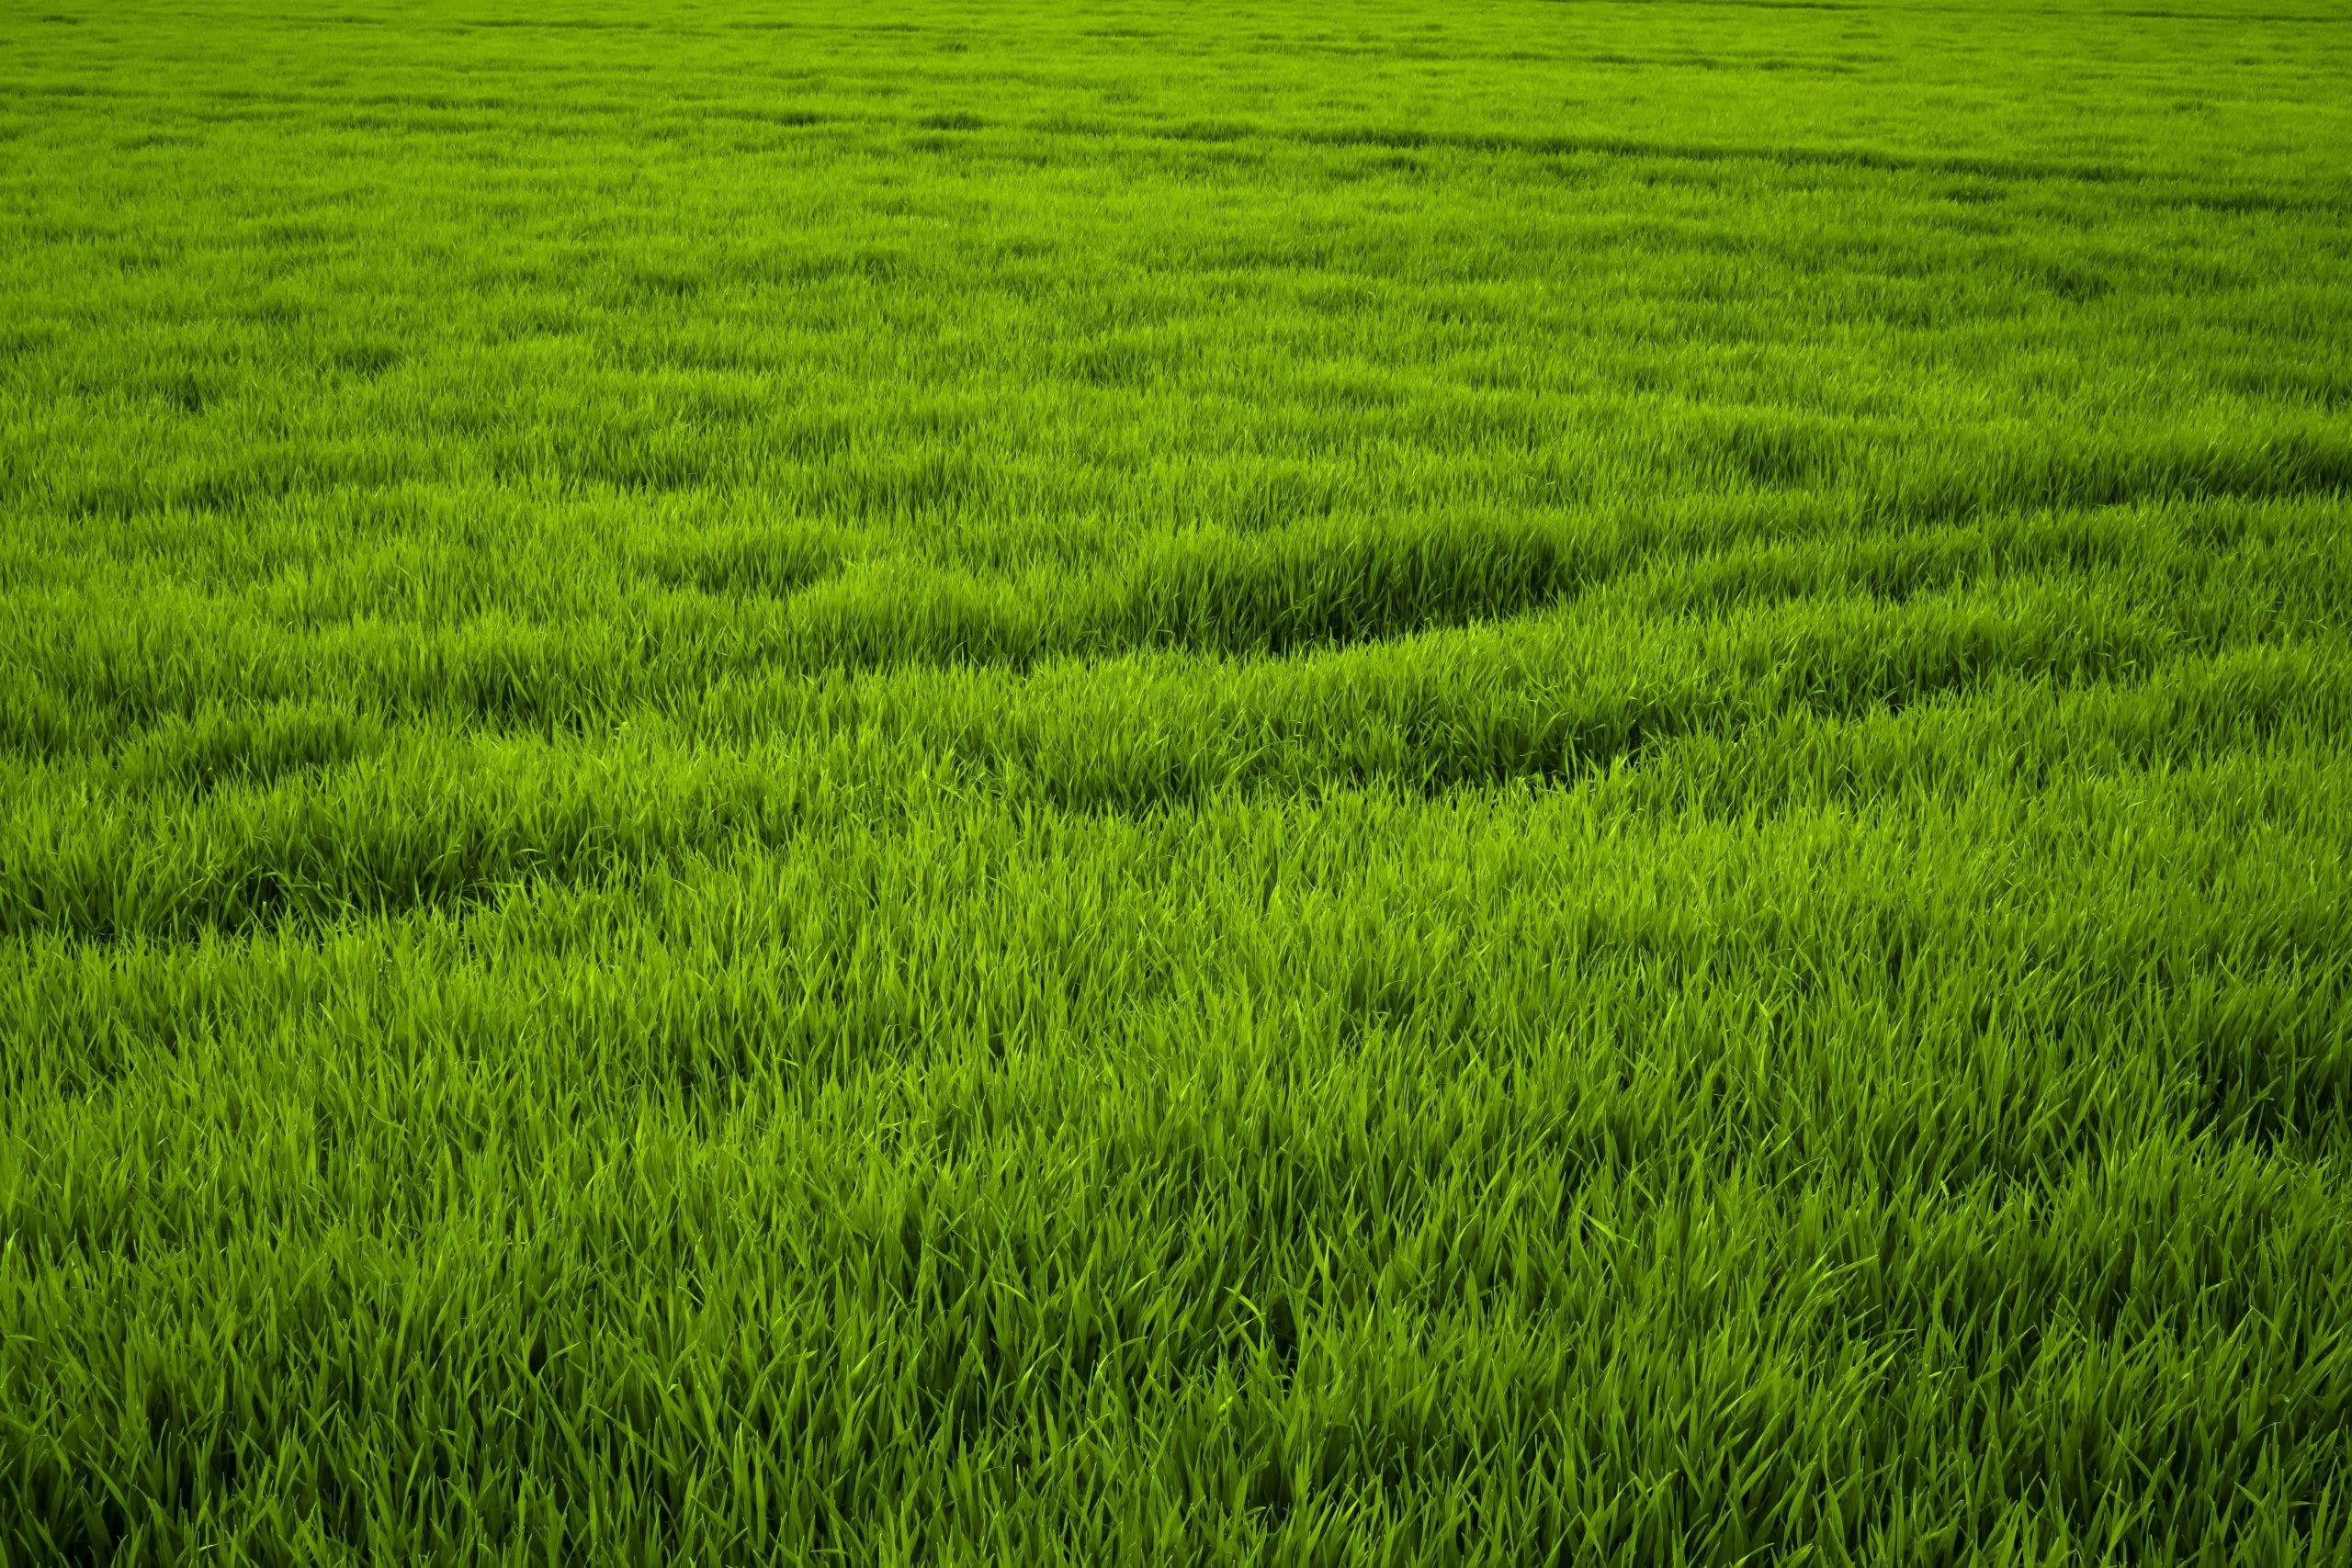 Grass Field Background